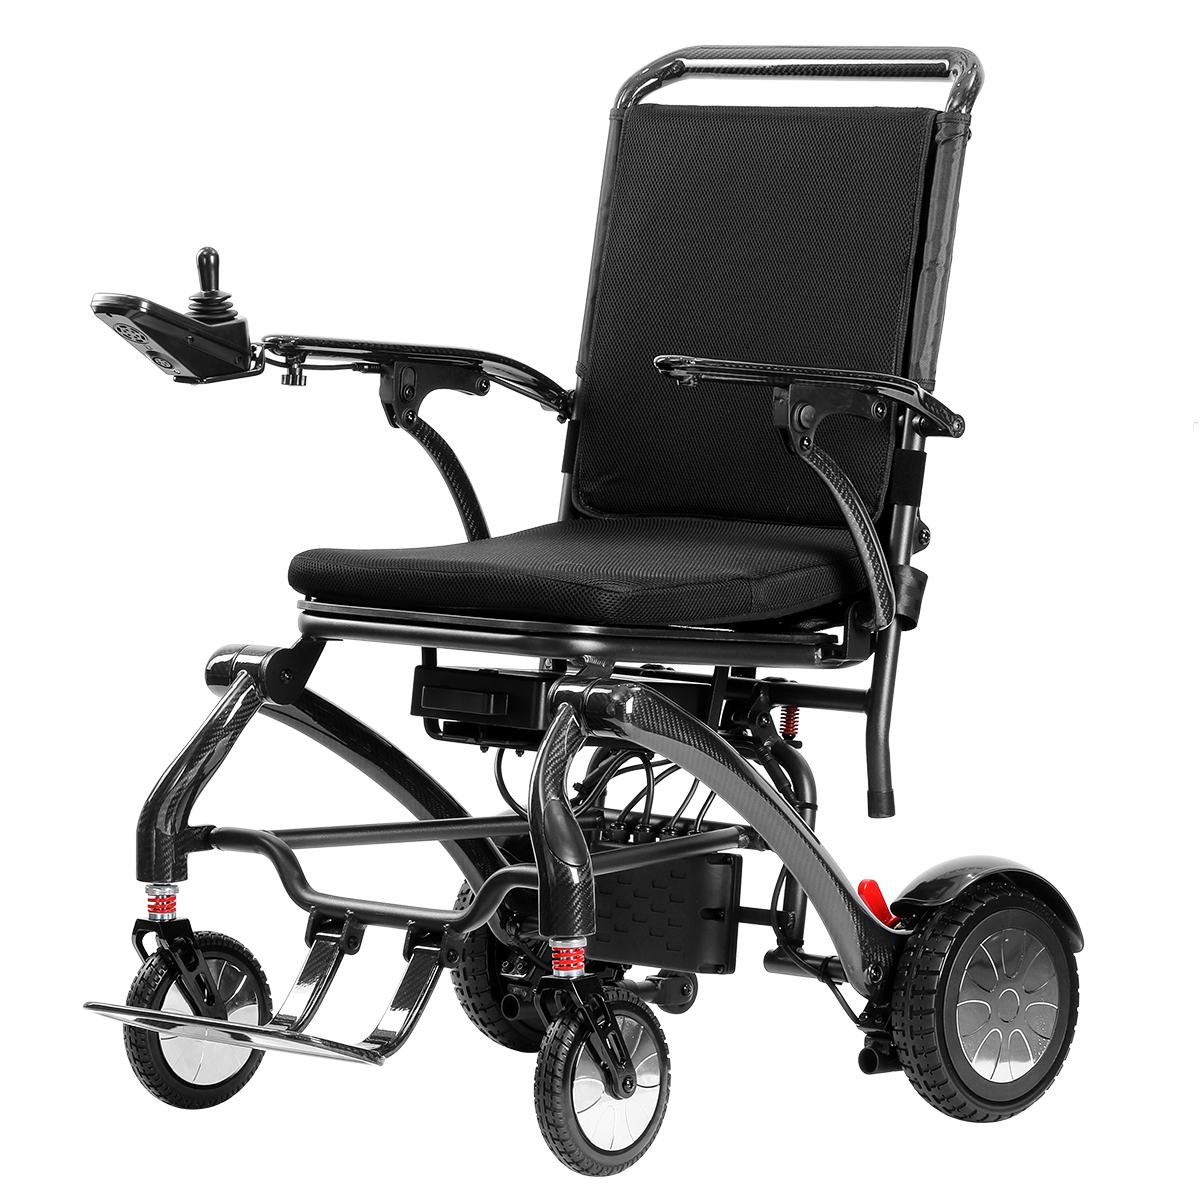 Portatif Elektrikli Tekerlekli Sandalyeler İçin 8 Önemli Husus